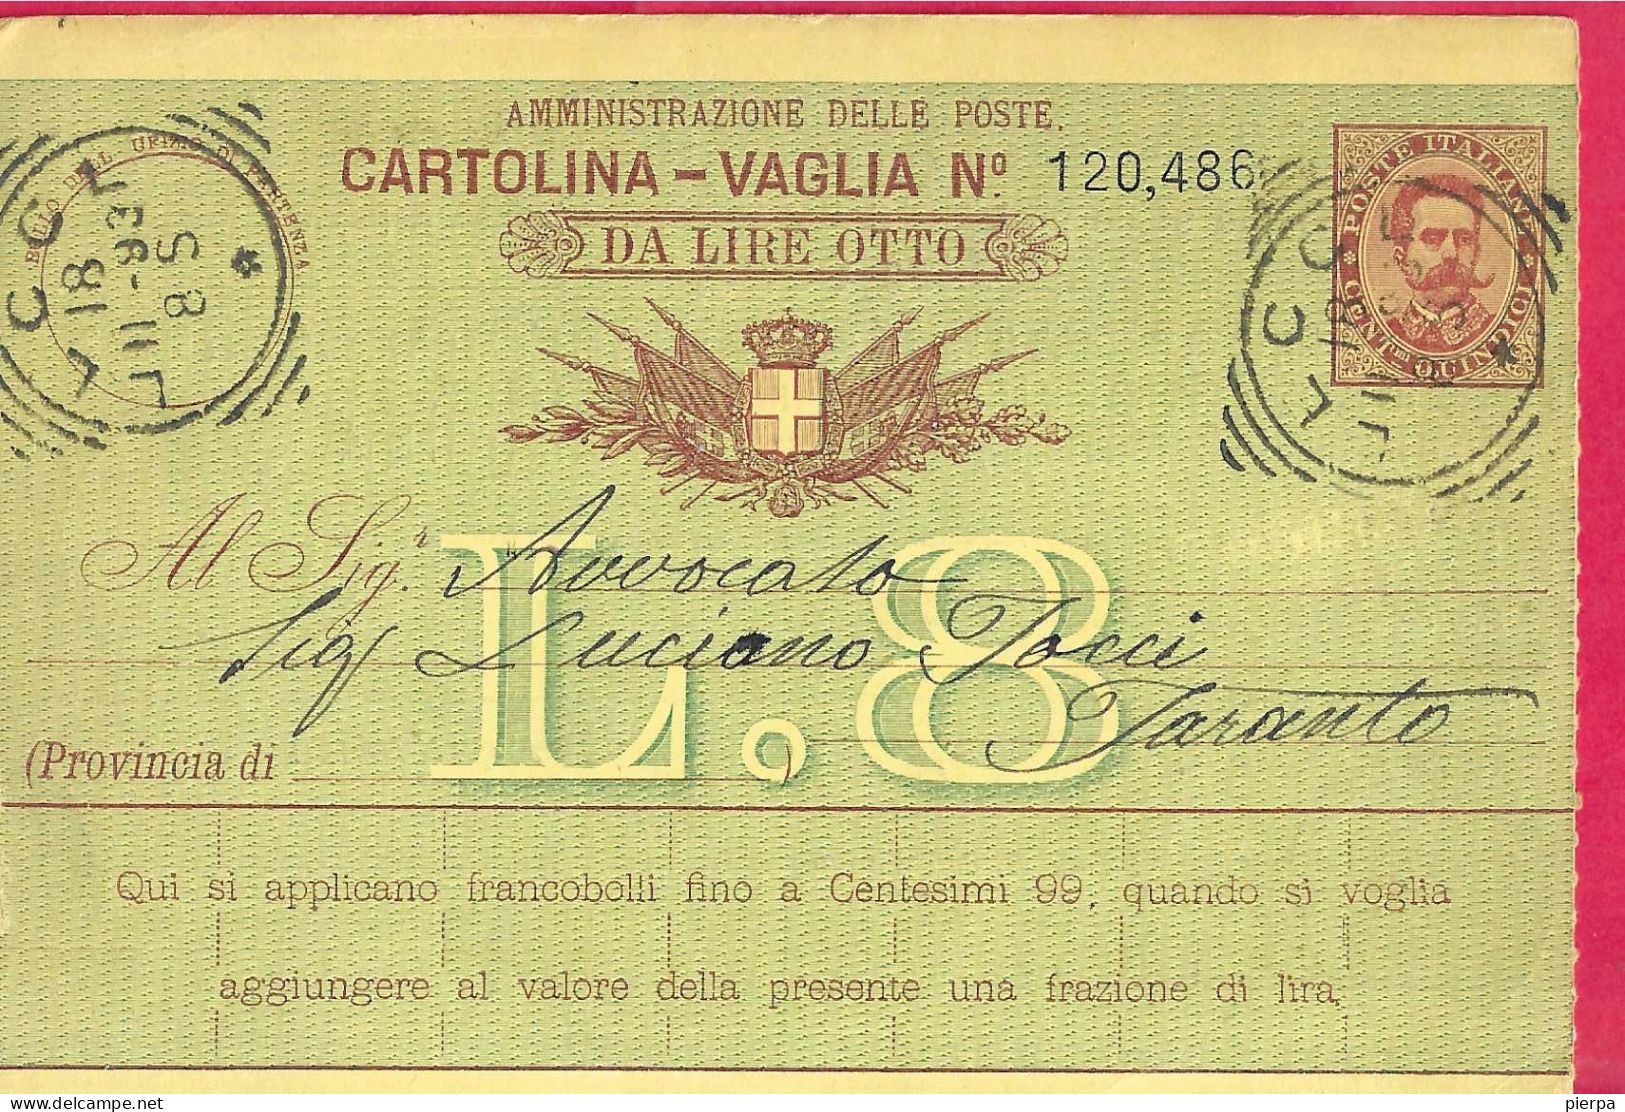 INTERO CARTOLINA-VAGLIA UMBERTO C.15 DA LIRE 8 (CAT. INT.12) -VIAGGIATA DA "LECCE*18.II.93* - ANNULLO TONDO RIQUADRATO - Entero Postal